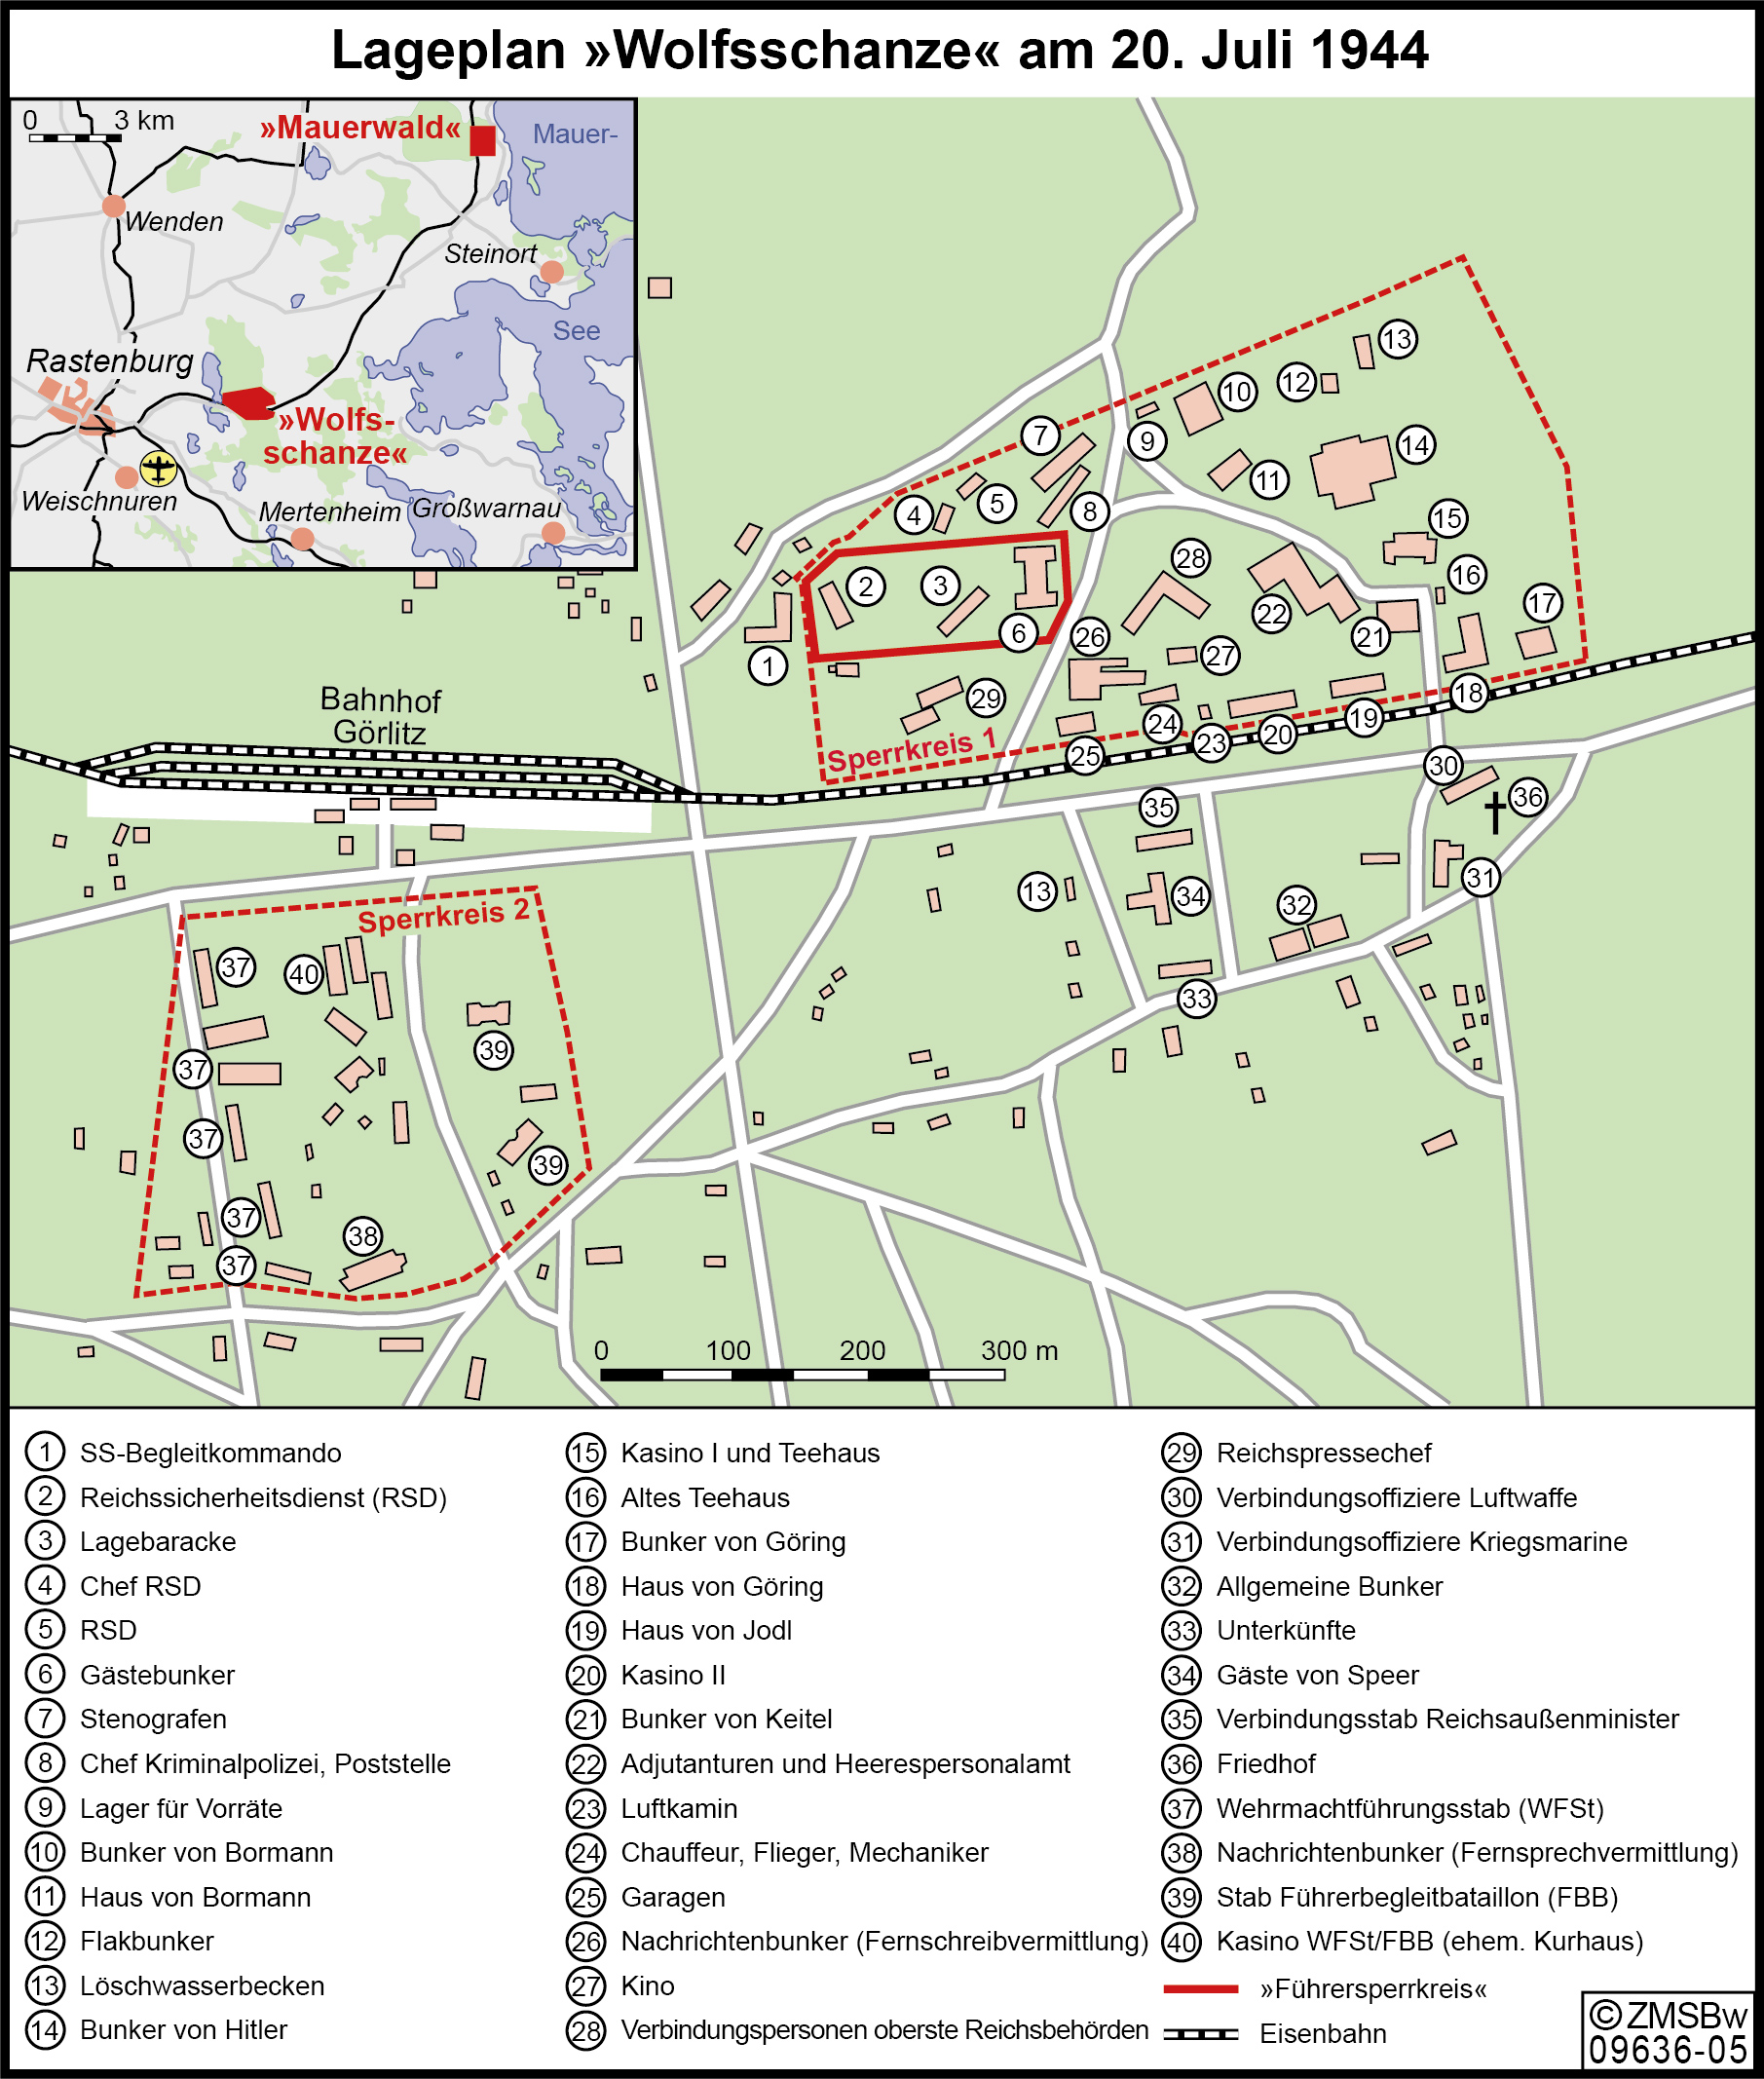 Lageplan des Führerhauptquartier "Wolfsschanze" mit eingezeichneten Sperrkreisen